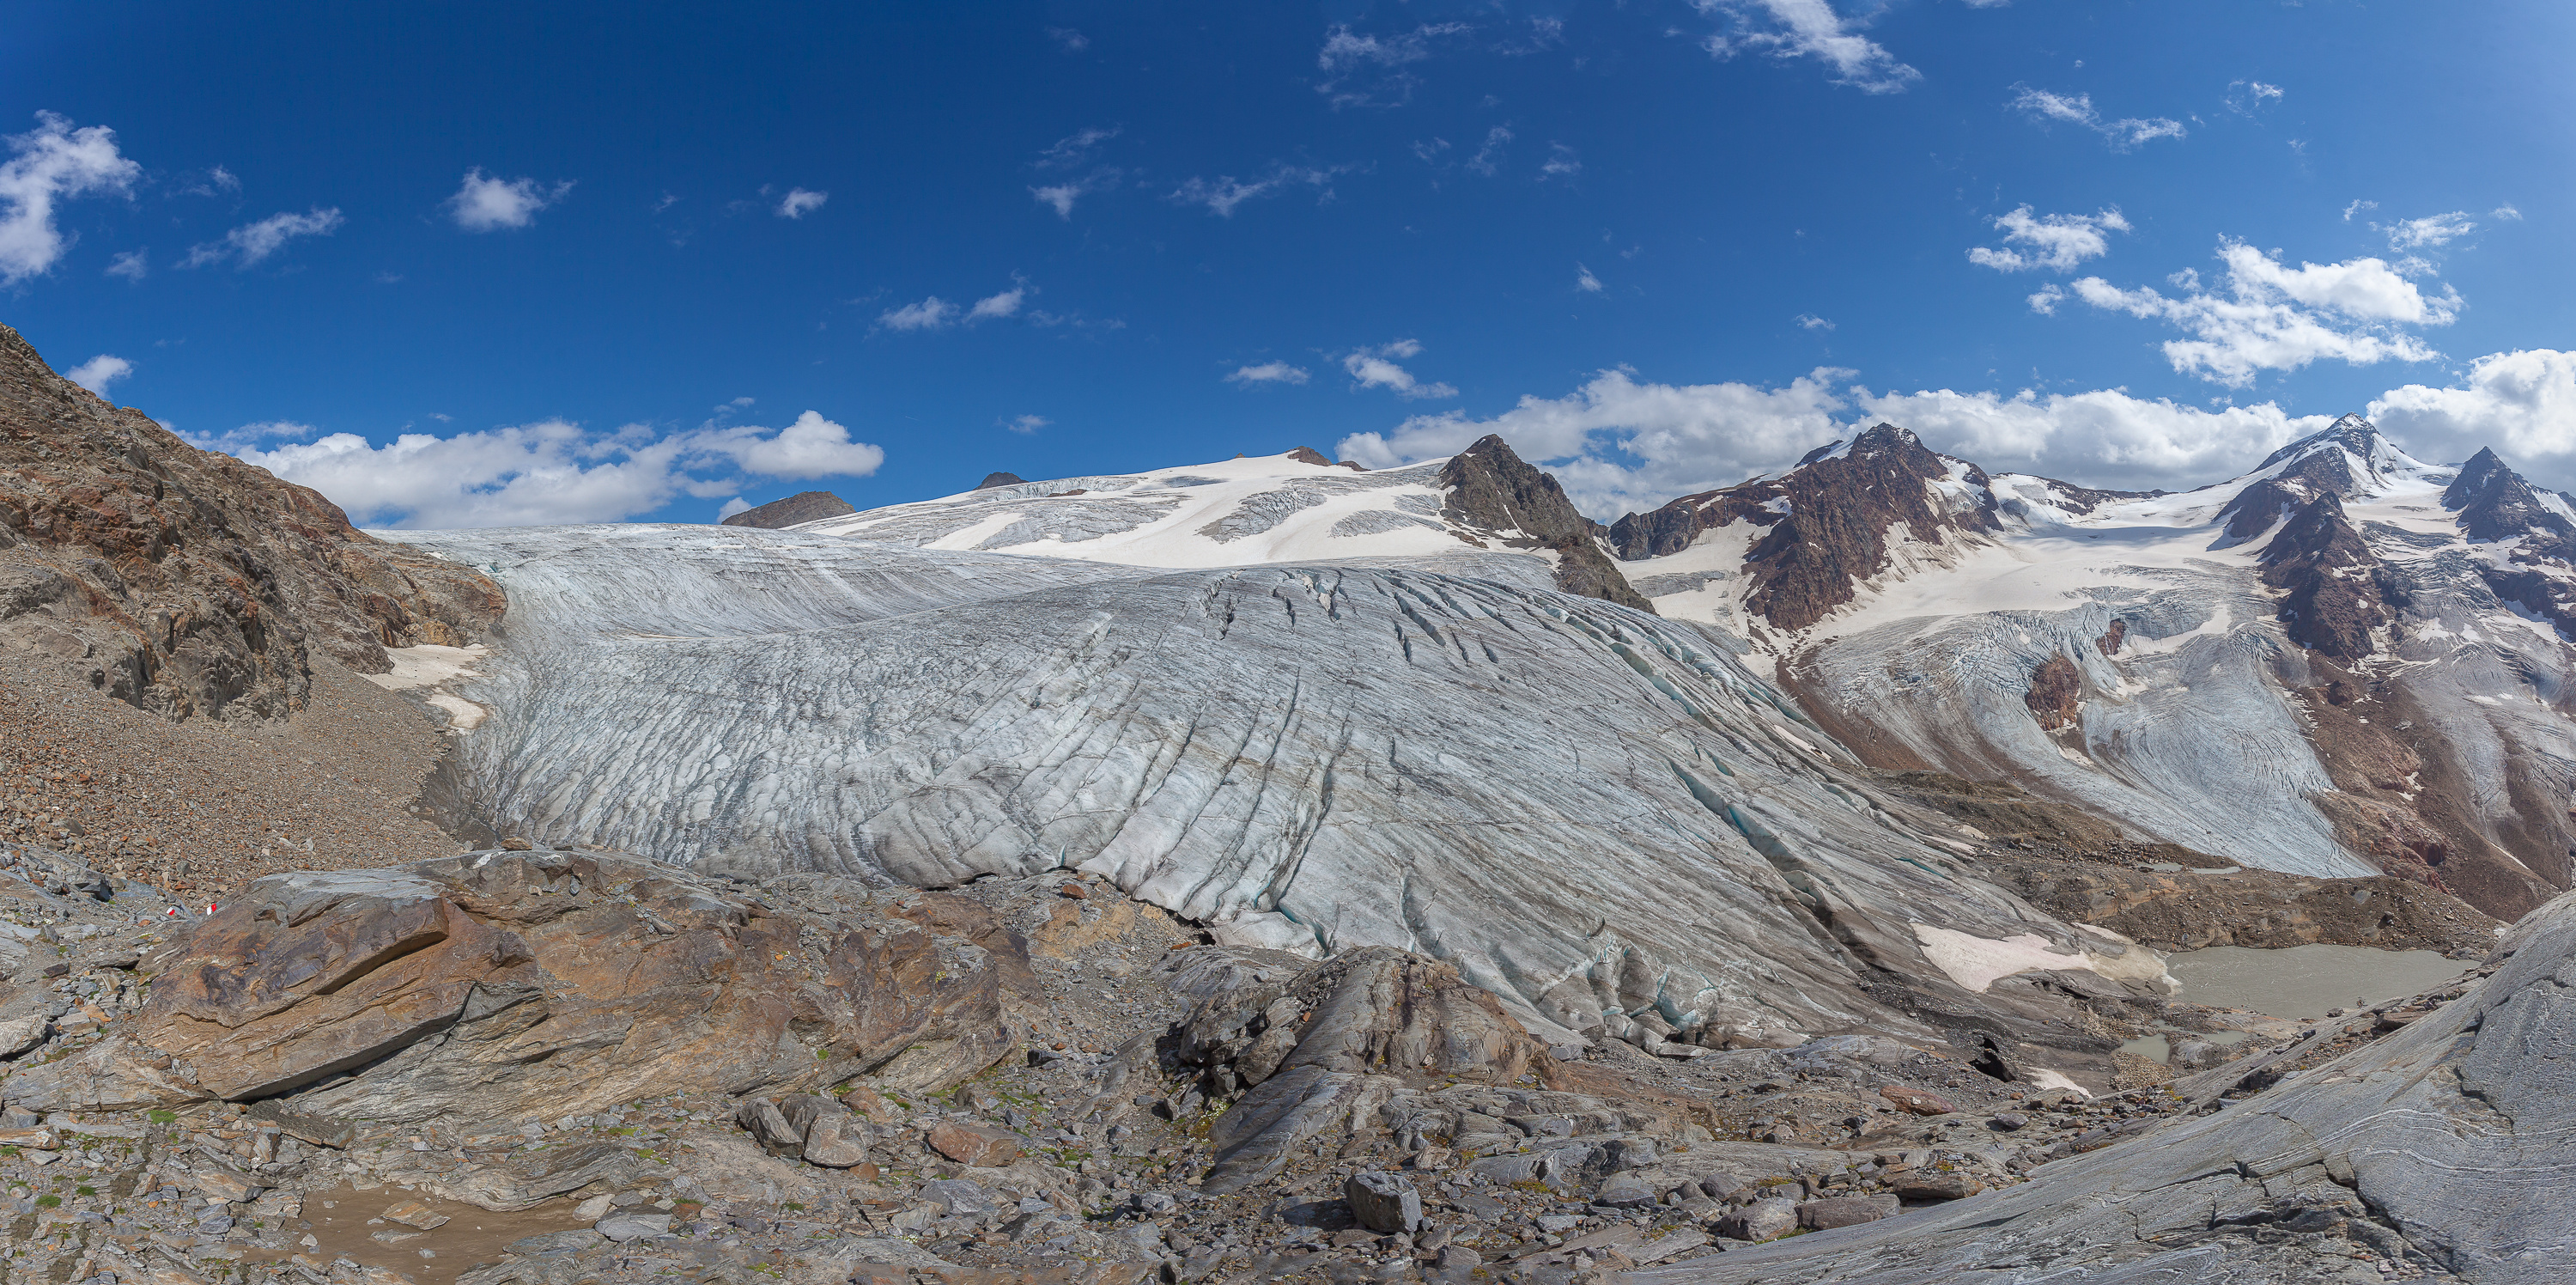 Le glacier autrichien Gepatschferner aura peut-être disparu d'ici 2050 si la fonte continue au même rythme. © Gianluca, Adobe Stock